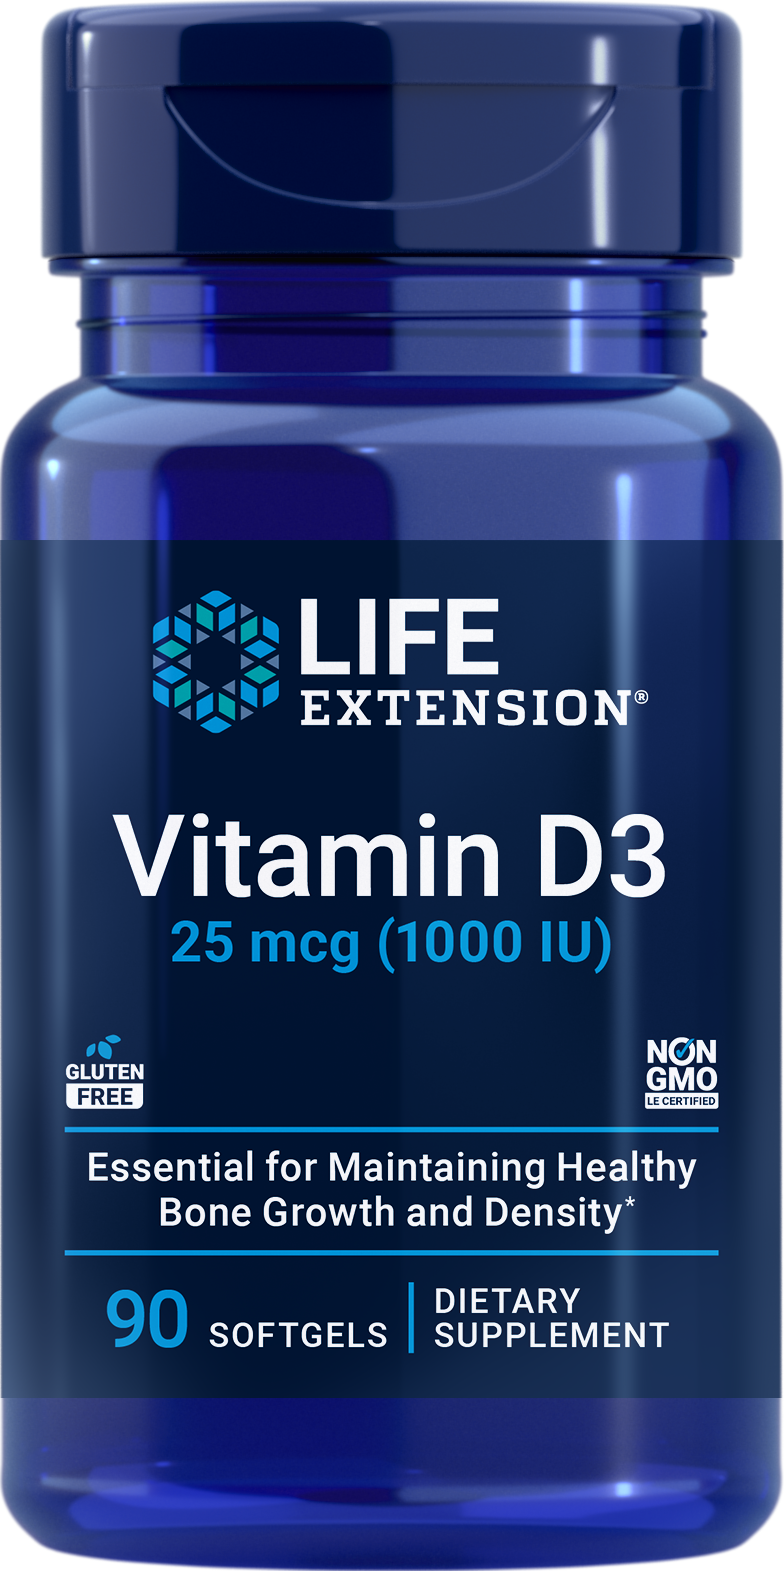 Vitamin D3, 90 softgels